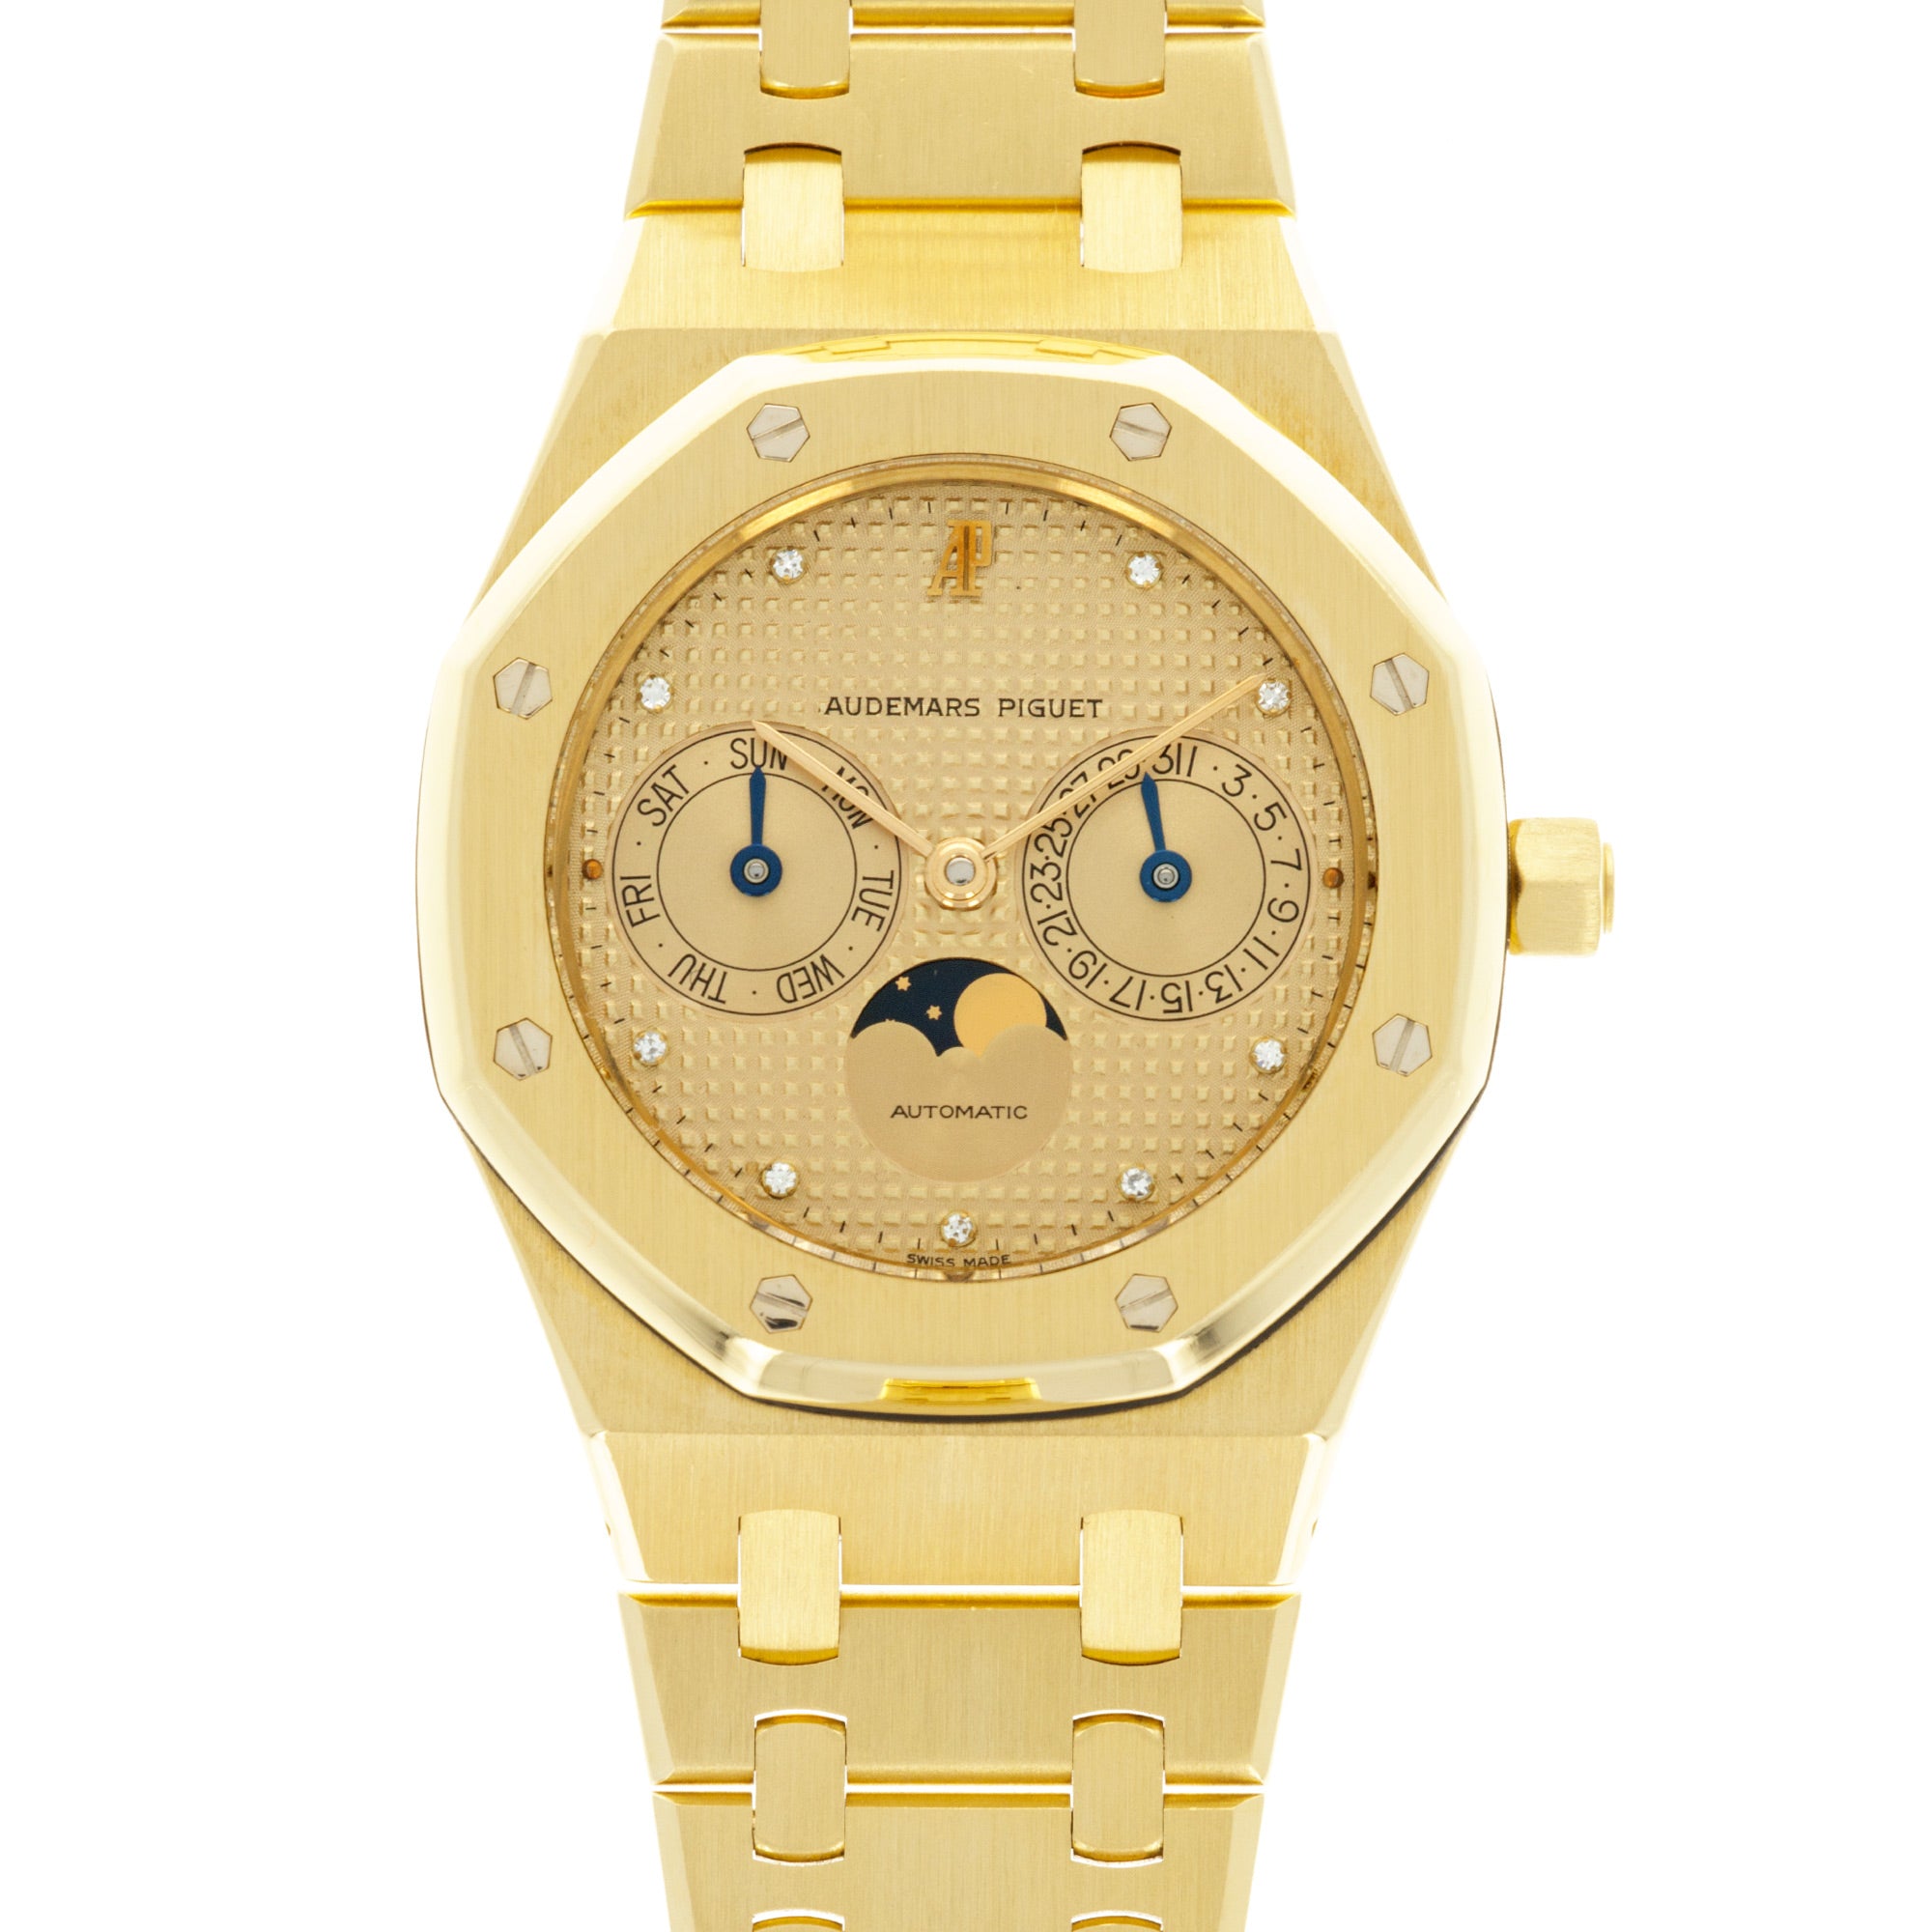 Audemars Piguet - Audemars Piguet Yellow Gold Calendar Moonphase Watch Ref. 25594 - The Keystone Watches